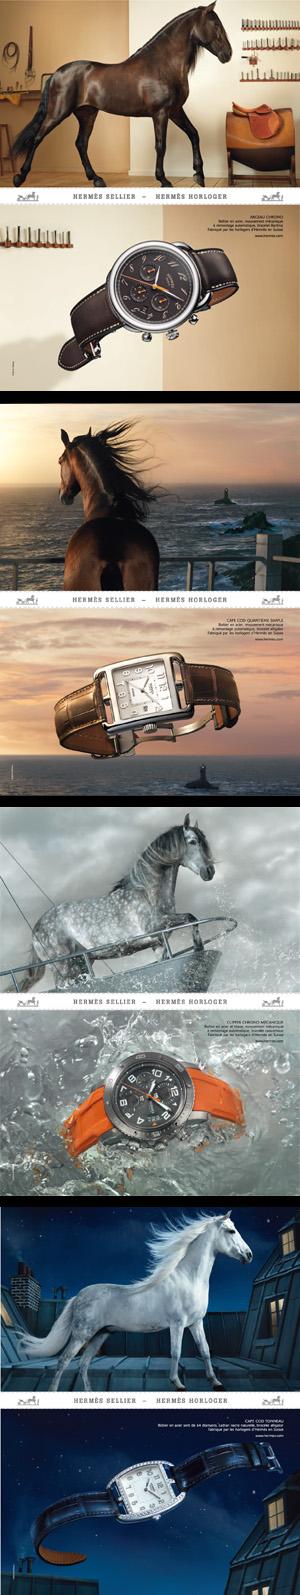 Hermès offre à ses collections horlogères une nouvelle campagne publicitaire.